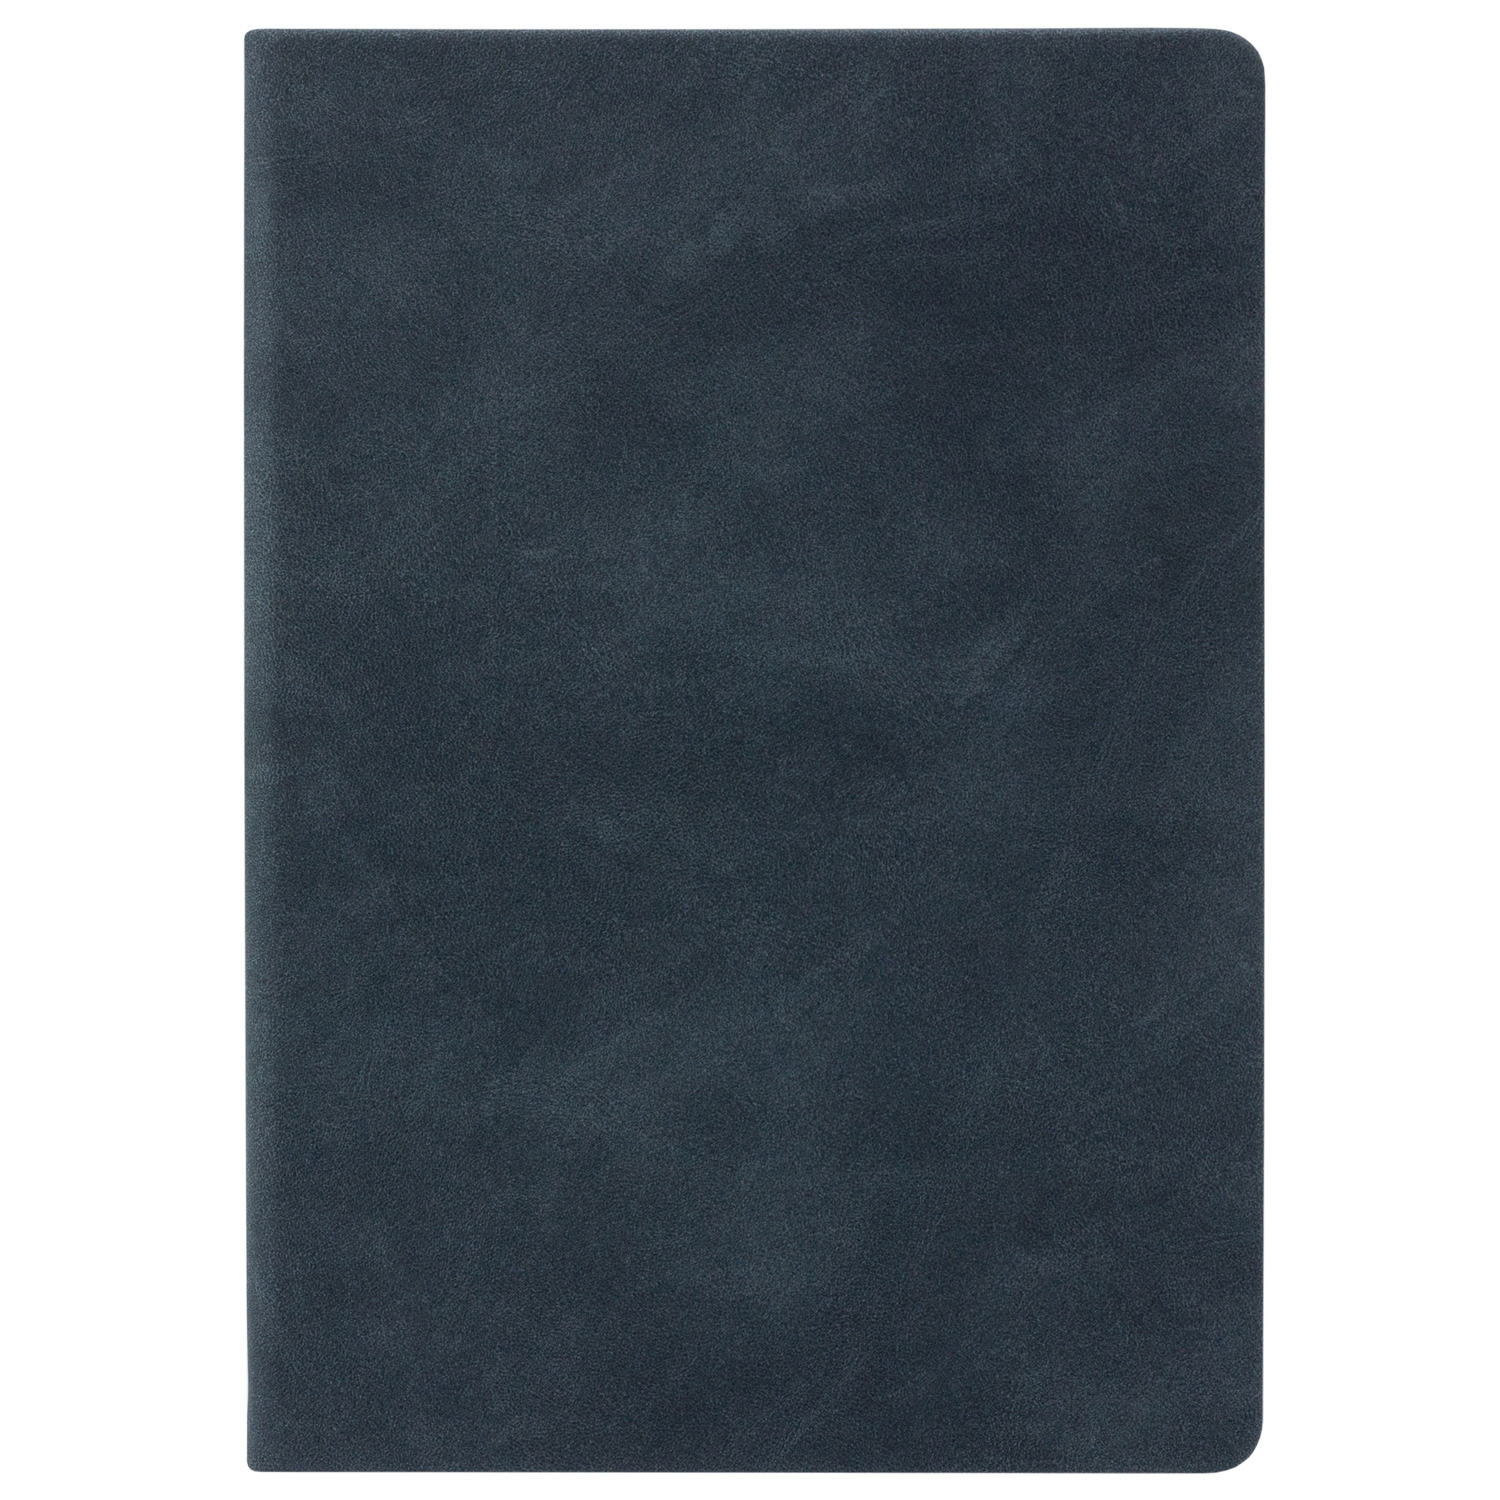 Ежедневник Stella недатированный с магнитом на обложке, синий, синий